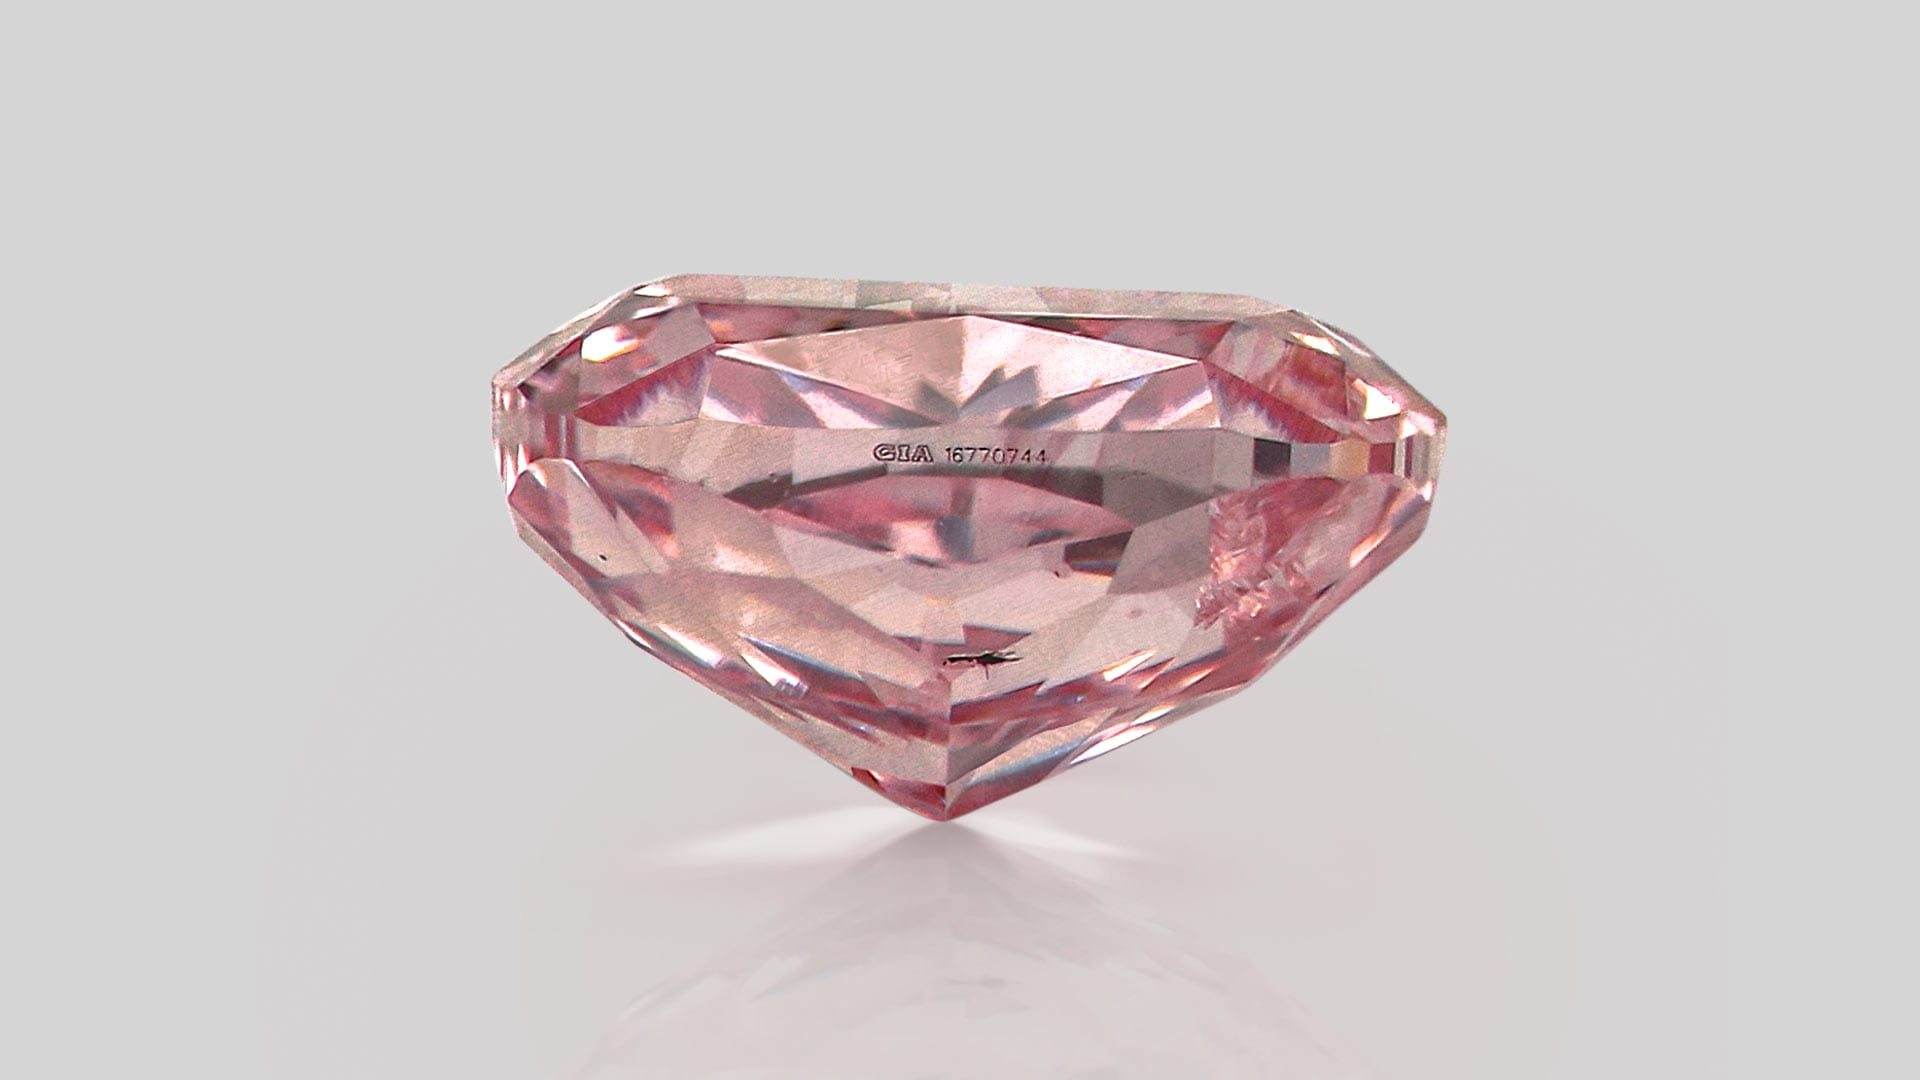 Pre-owned Argyle pink diamonds hit market in unique public tender